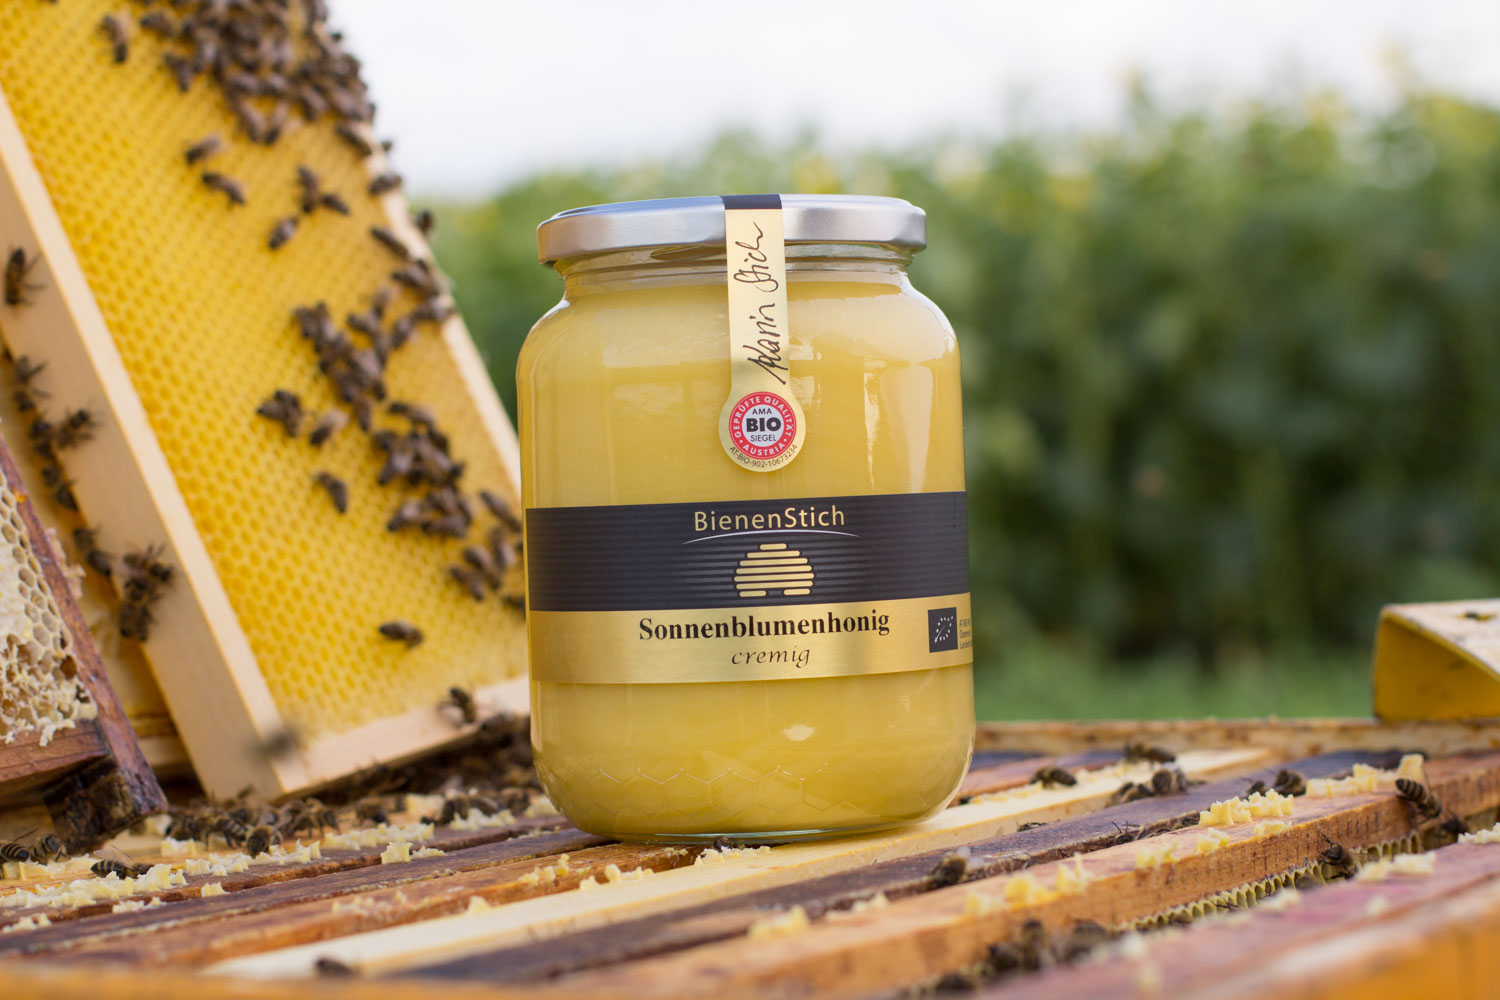 Sonnenblumenhonig-Cremehonig-1kg-Bienenstich-Honig-biologisch-bio-Waldhonig-Blütenhonig-Österreich-Wien-Manhartsbrunn-Familie-Stich-Imker-Imkerei-Produktfoto-Biene-1